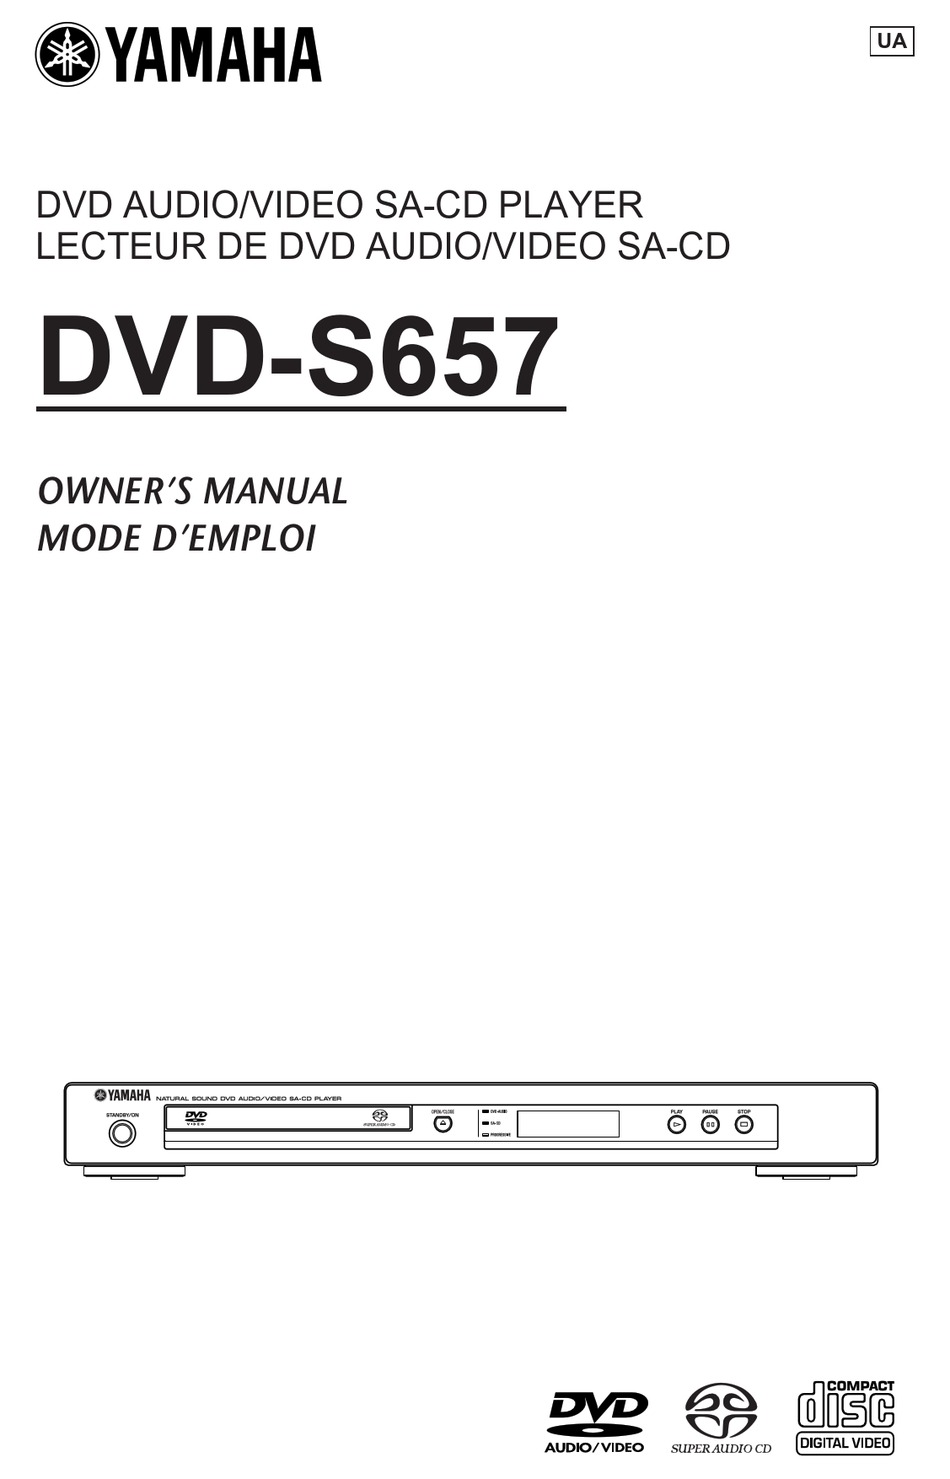 YAMAHA DVD-S657 OWNER'S MANUAL Pdf Download | ManualsLib